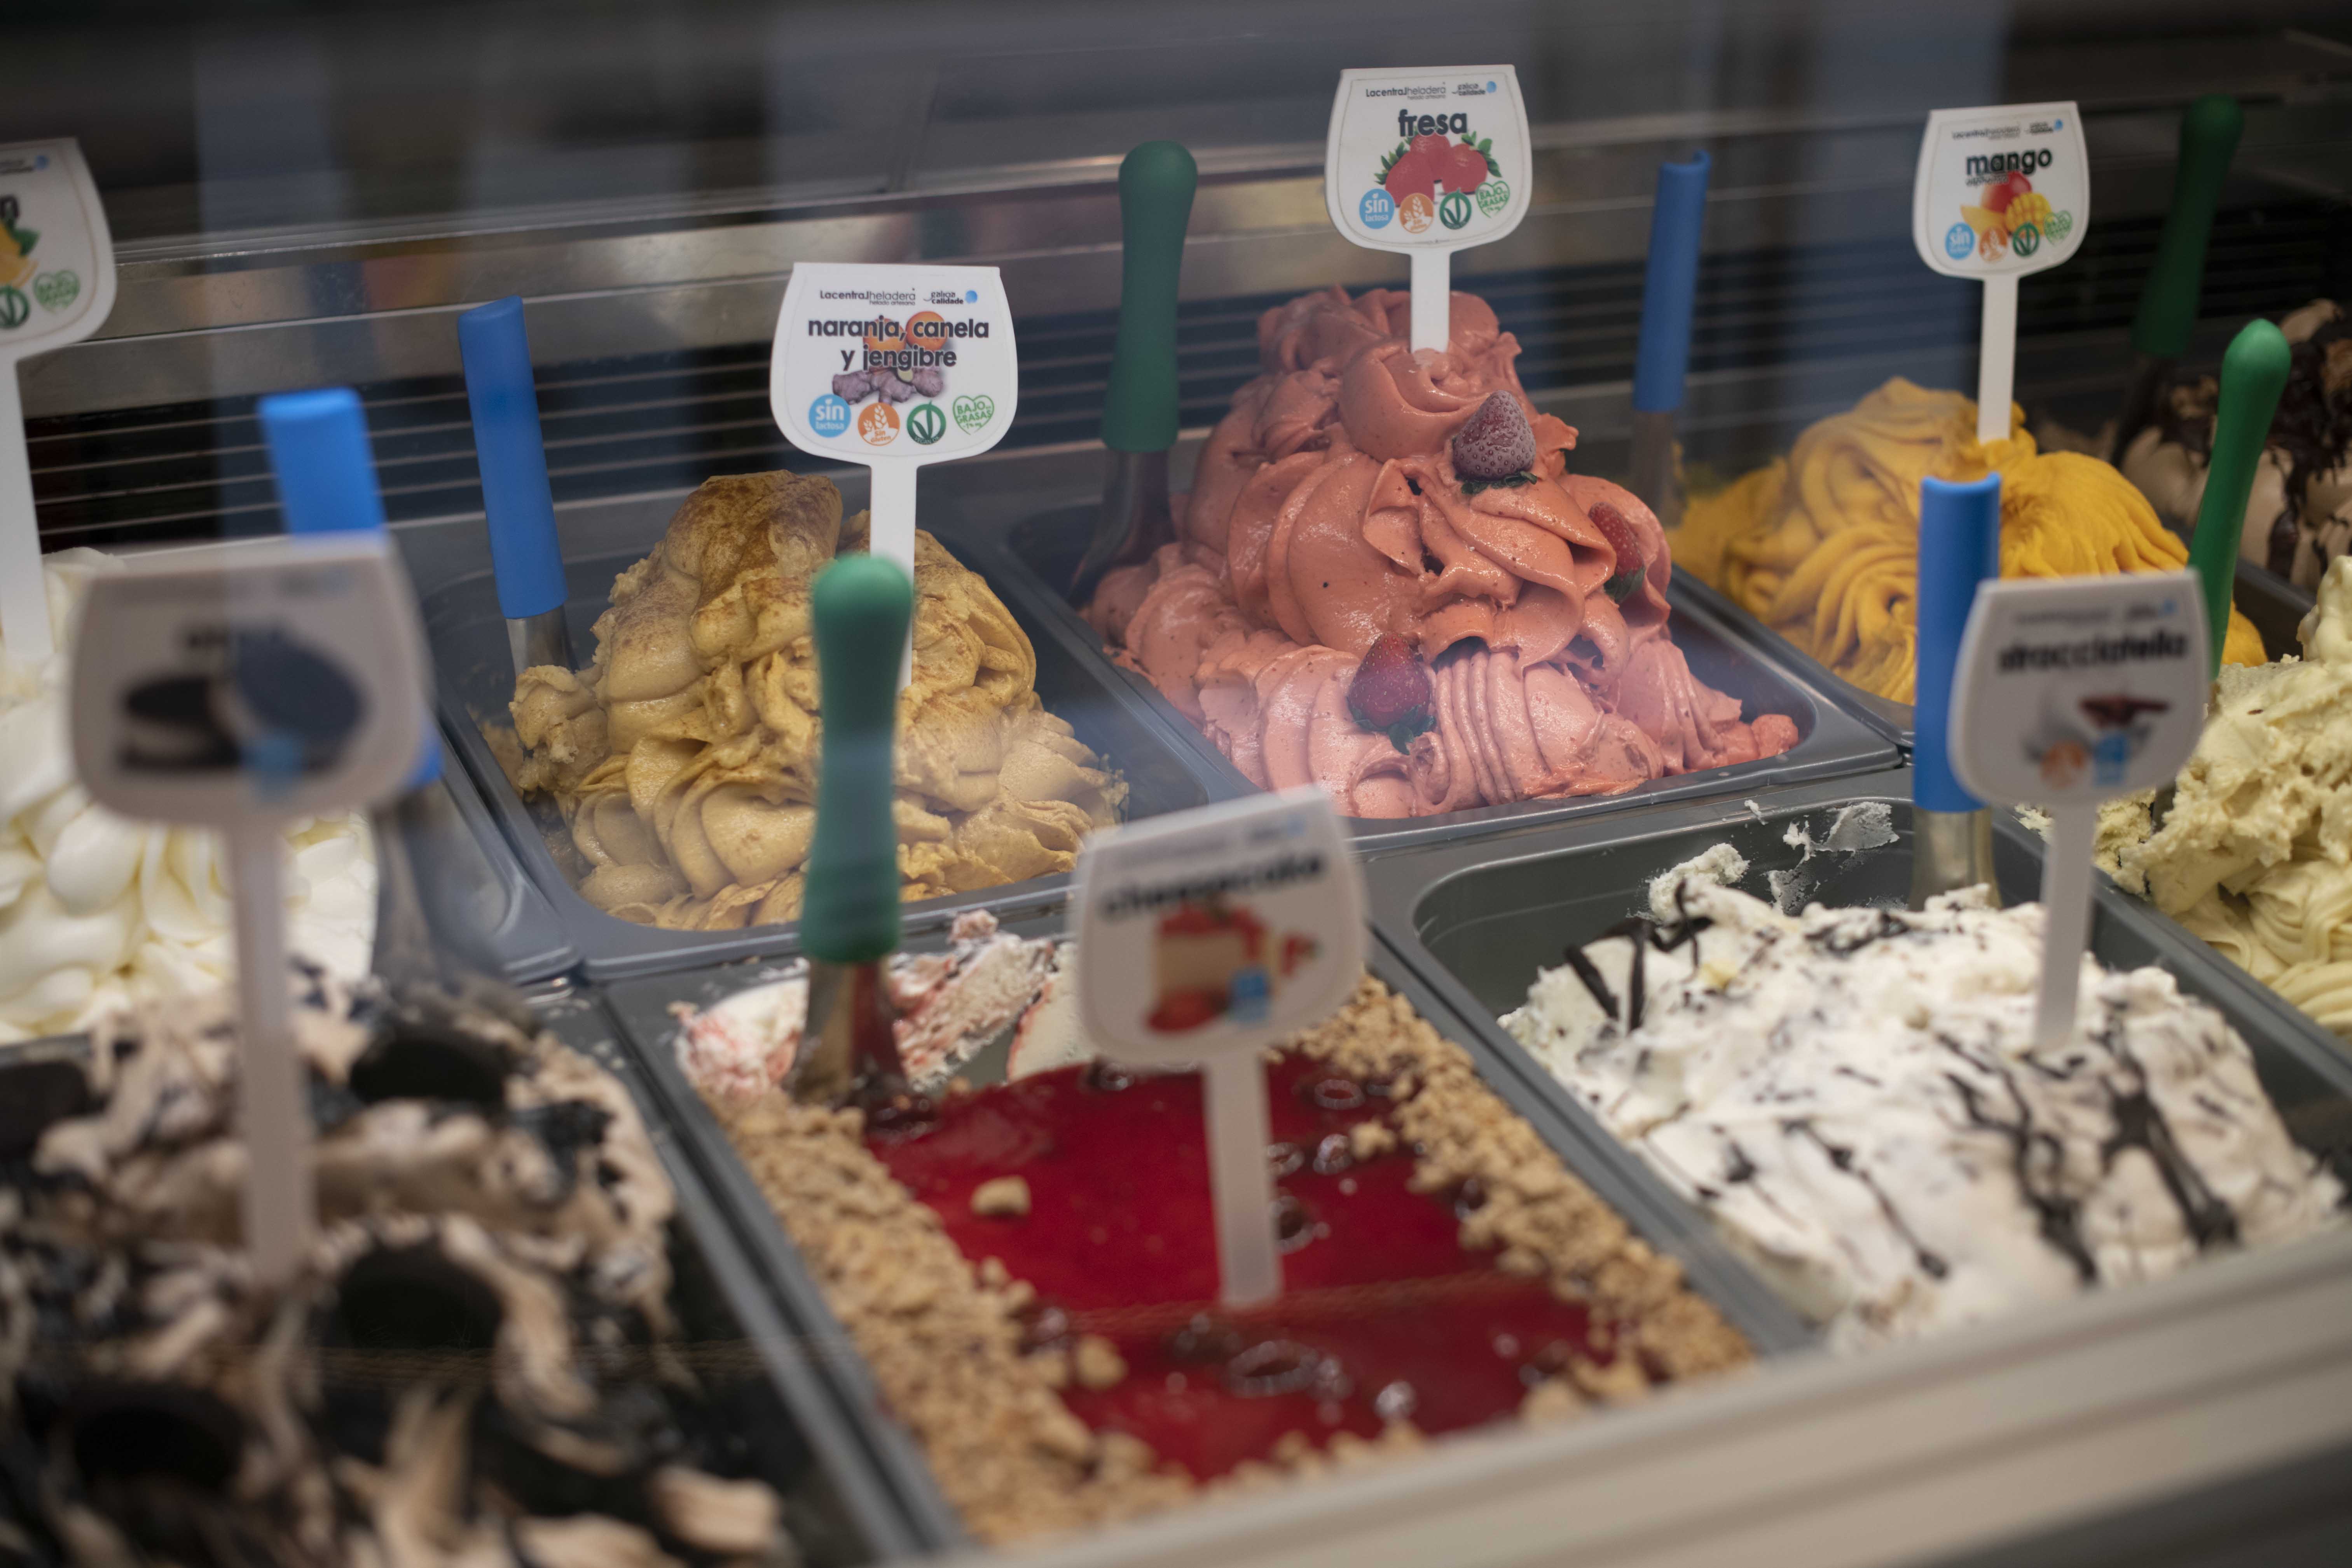 Ourense. 29/05/2020. Reportaje de gente comiendo helados en un día tan caluroso en la ciudad.
Foto: Xesús Fariñas